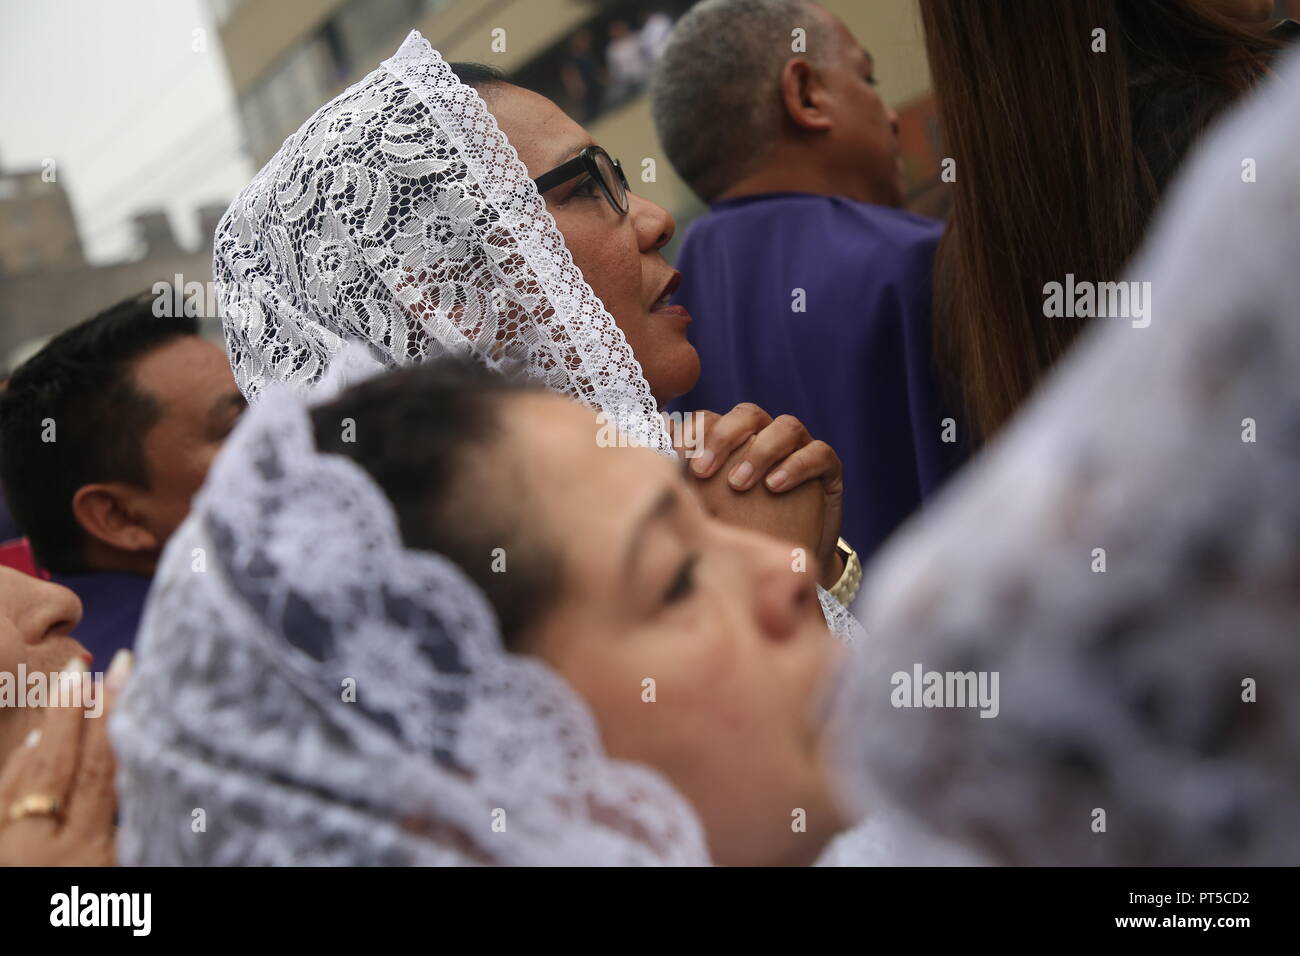 Lima, Perù. 06 ott 2018. Una donna che prega durante una processione in onore del 'Senor de los Milagros' (il Signore dei Miracoli). 'Senor de los Milagros' è una festa cattolica che si celebra ogni anno nella città di Lima. Credito: Geraldo CAS/dpa/Alamy Live News Foto Stock